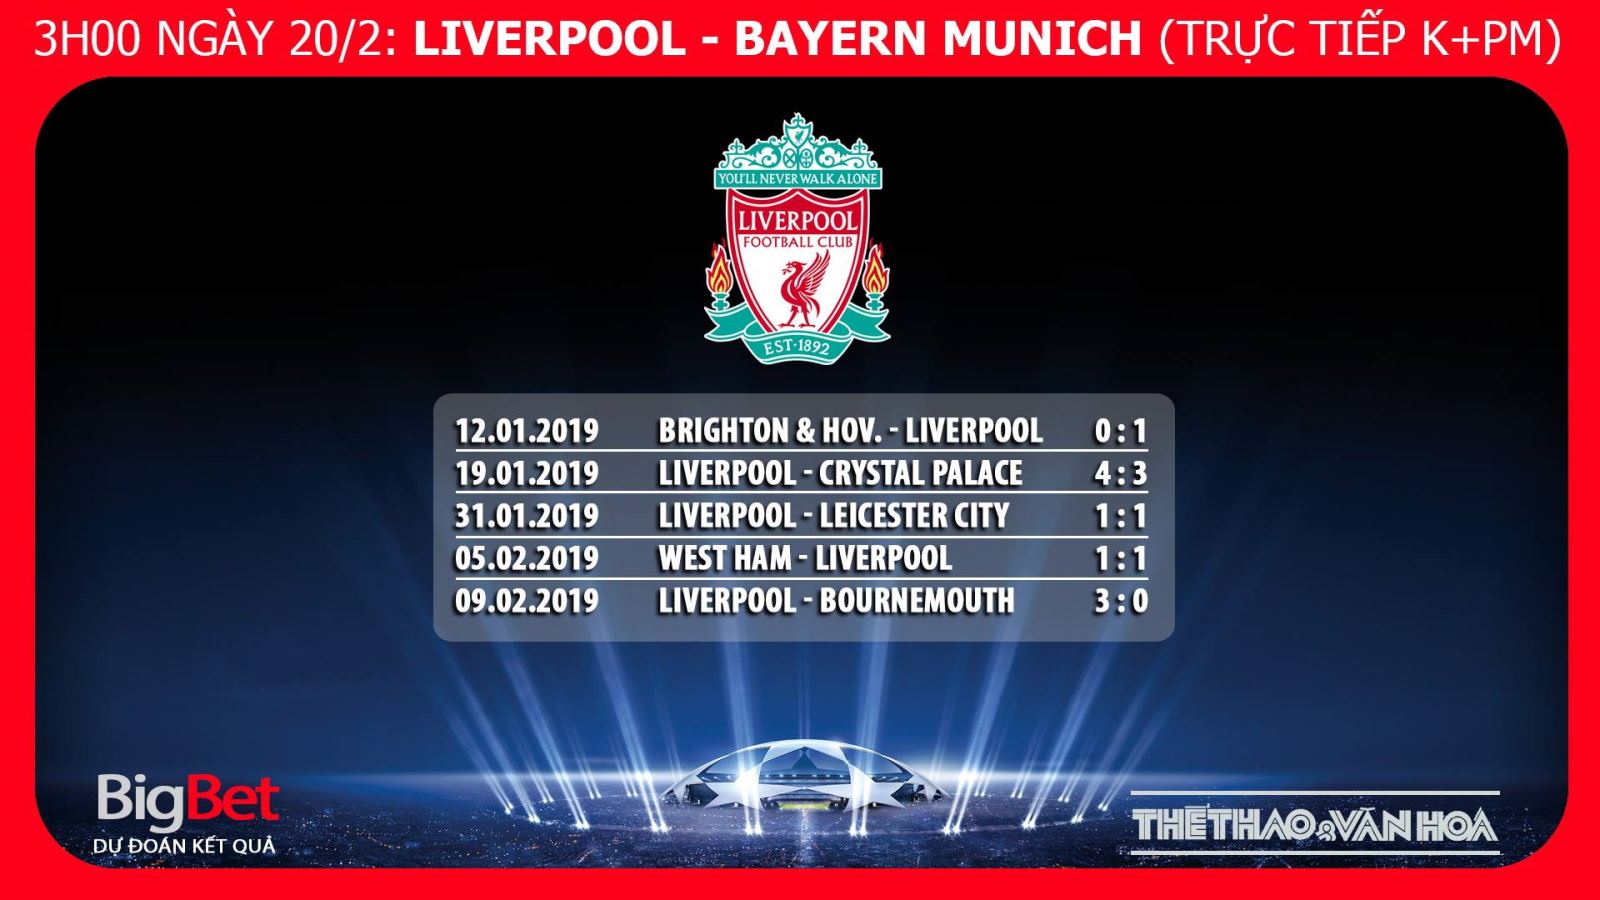 Kèo bóng đá, Nhận định bóng đá Liverpool vs Bayern, kèo Liverpool vs Bayern, kèo Bayern Liverpool, kèo Liverpool, trực tiếp bóng đá, trực tiếp Liverpool vs Bayern, truc tiep Liver